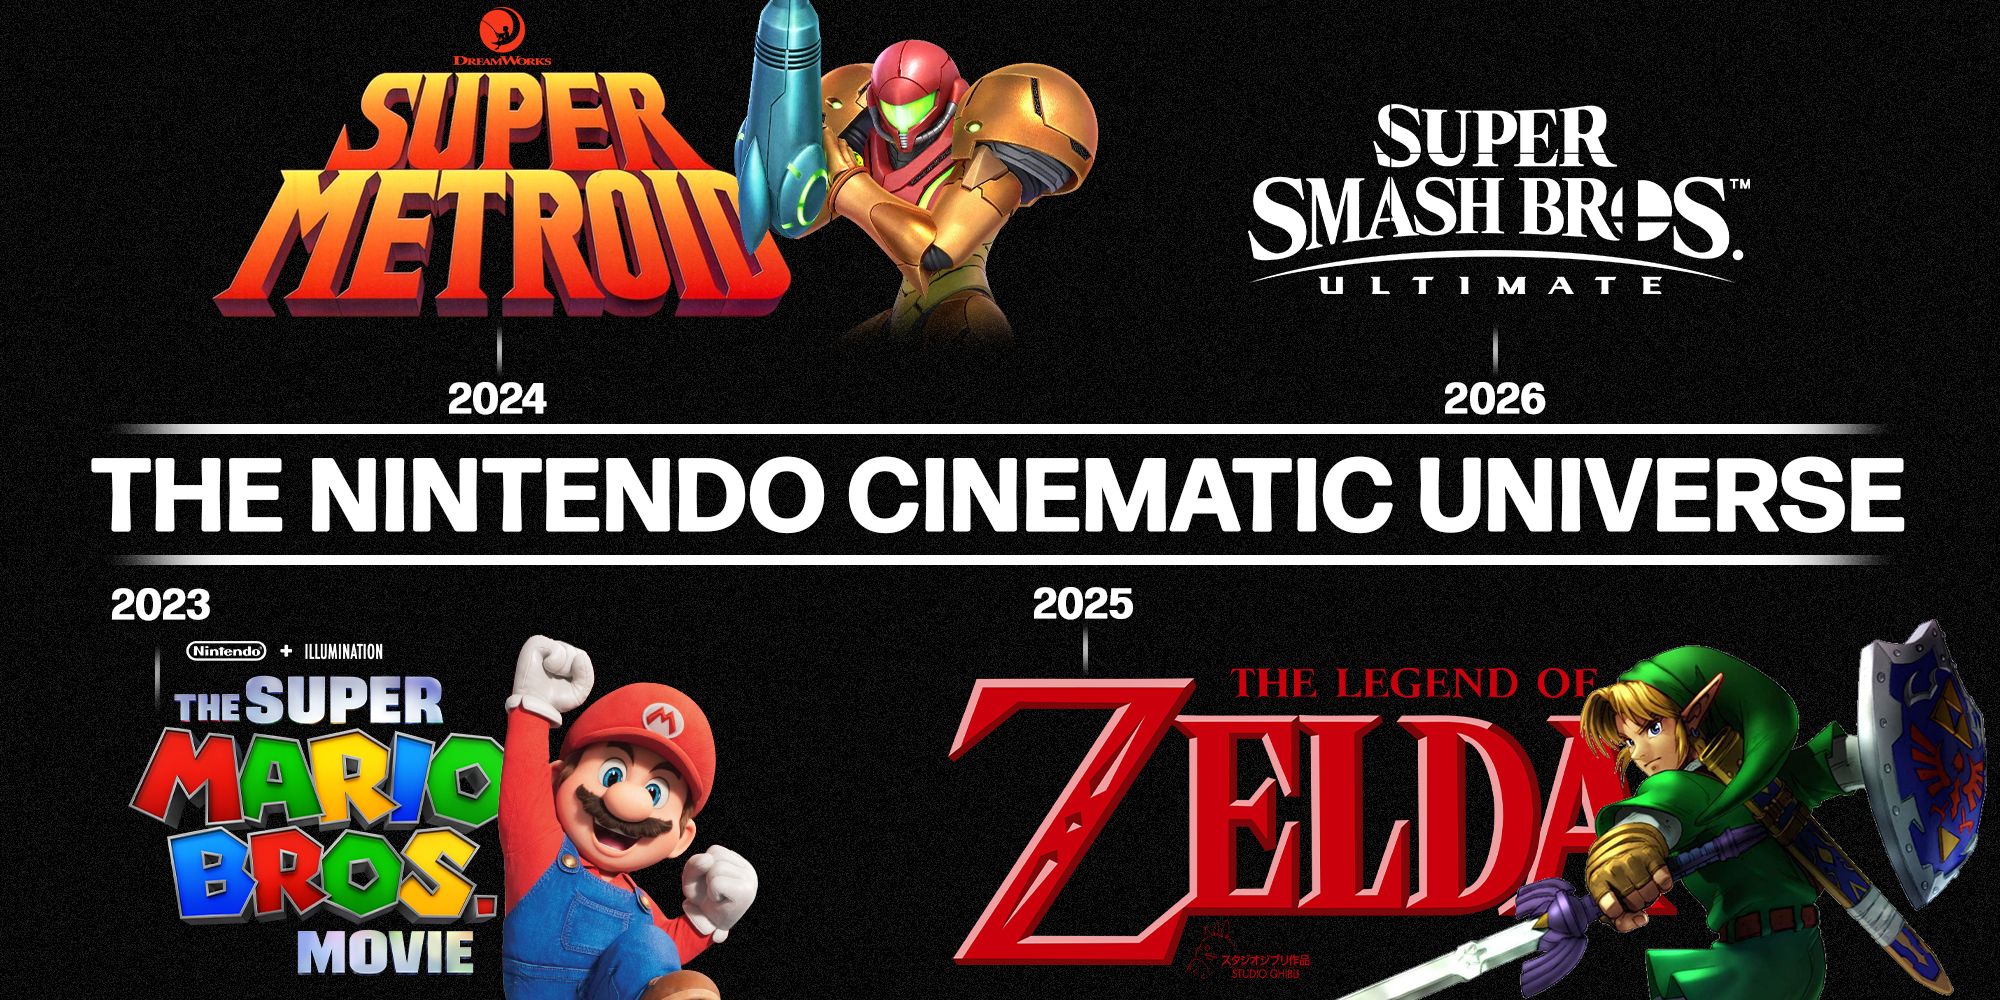 The Nintendo Cinematic Universe with Mario, Metroid, Zelda, and Smash Bros.